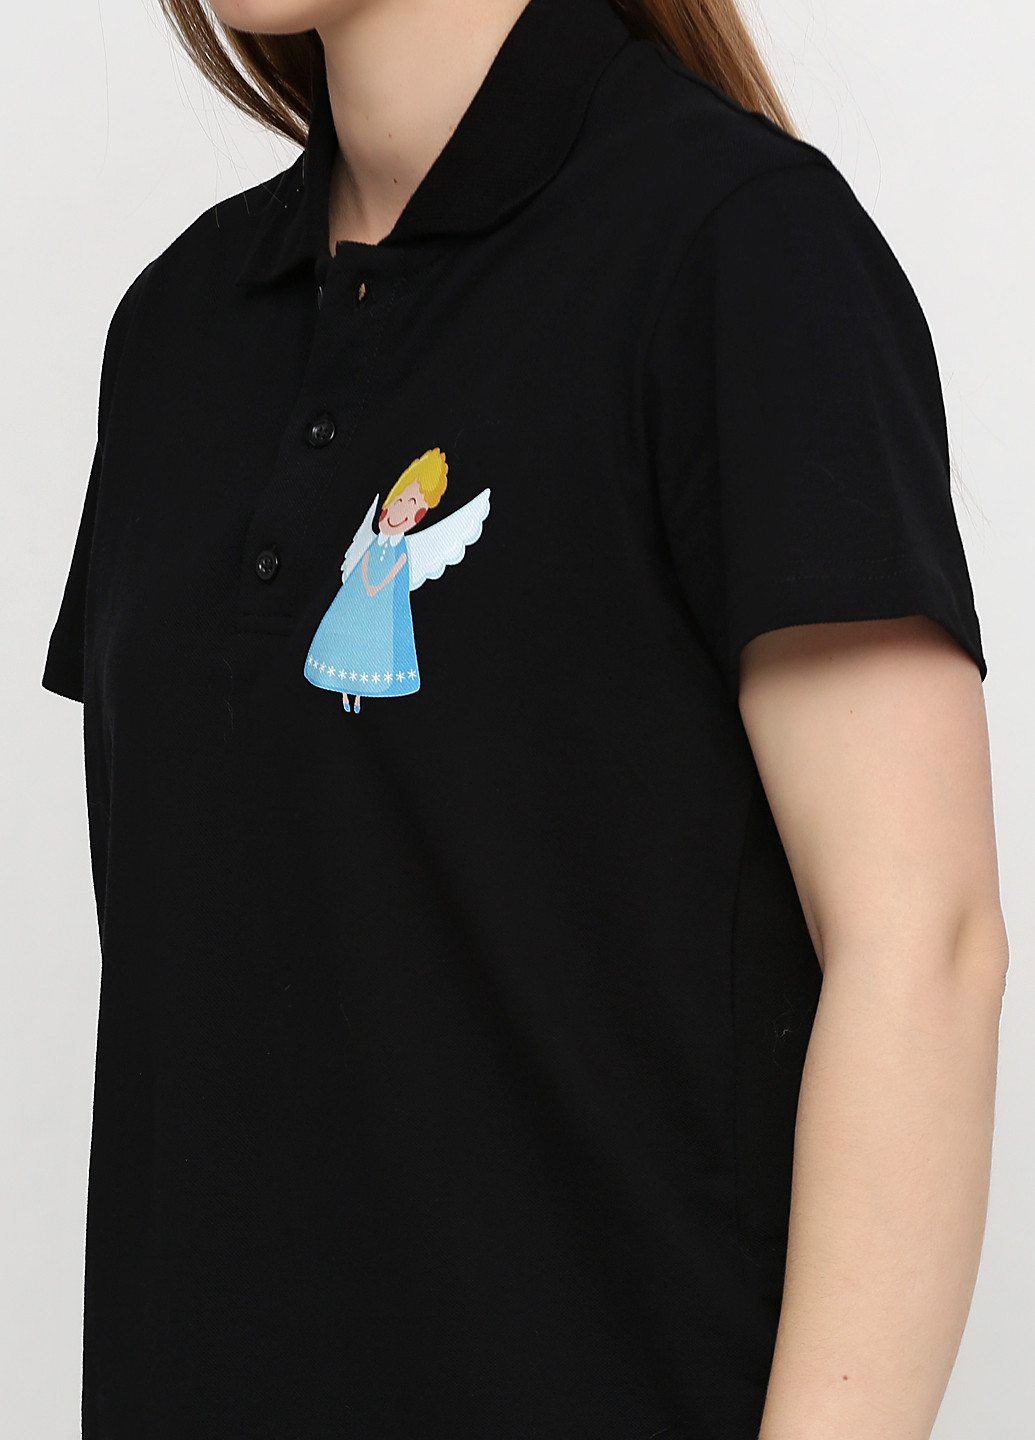 Черная женская футболка-поло Tryapos с рисунком